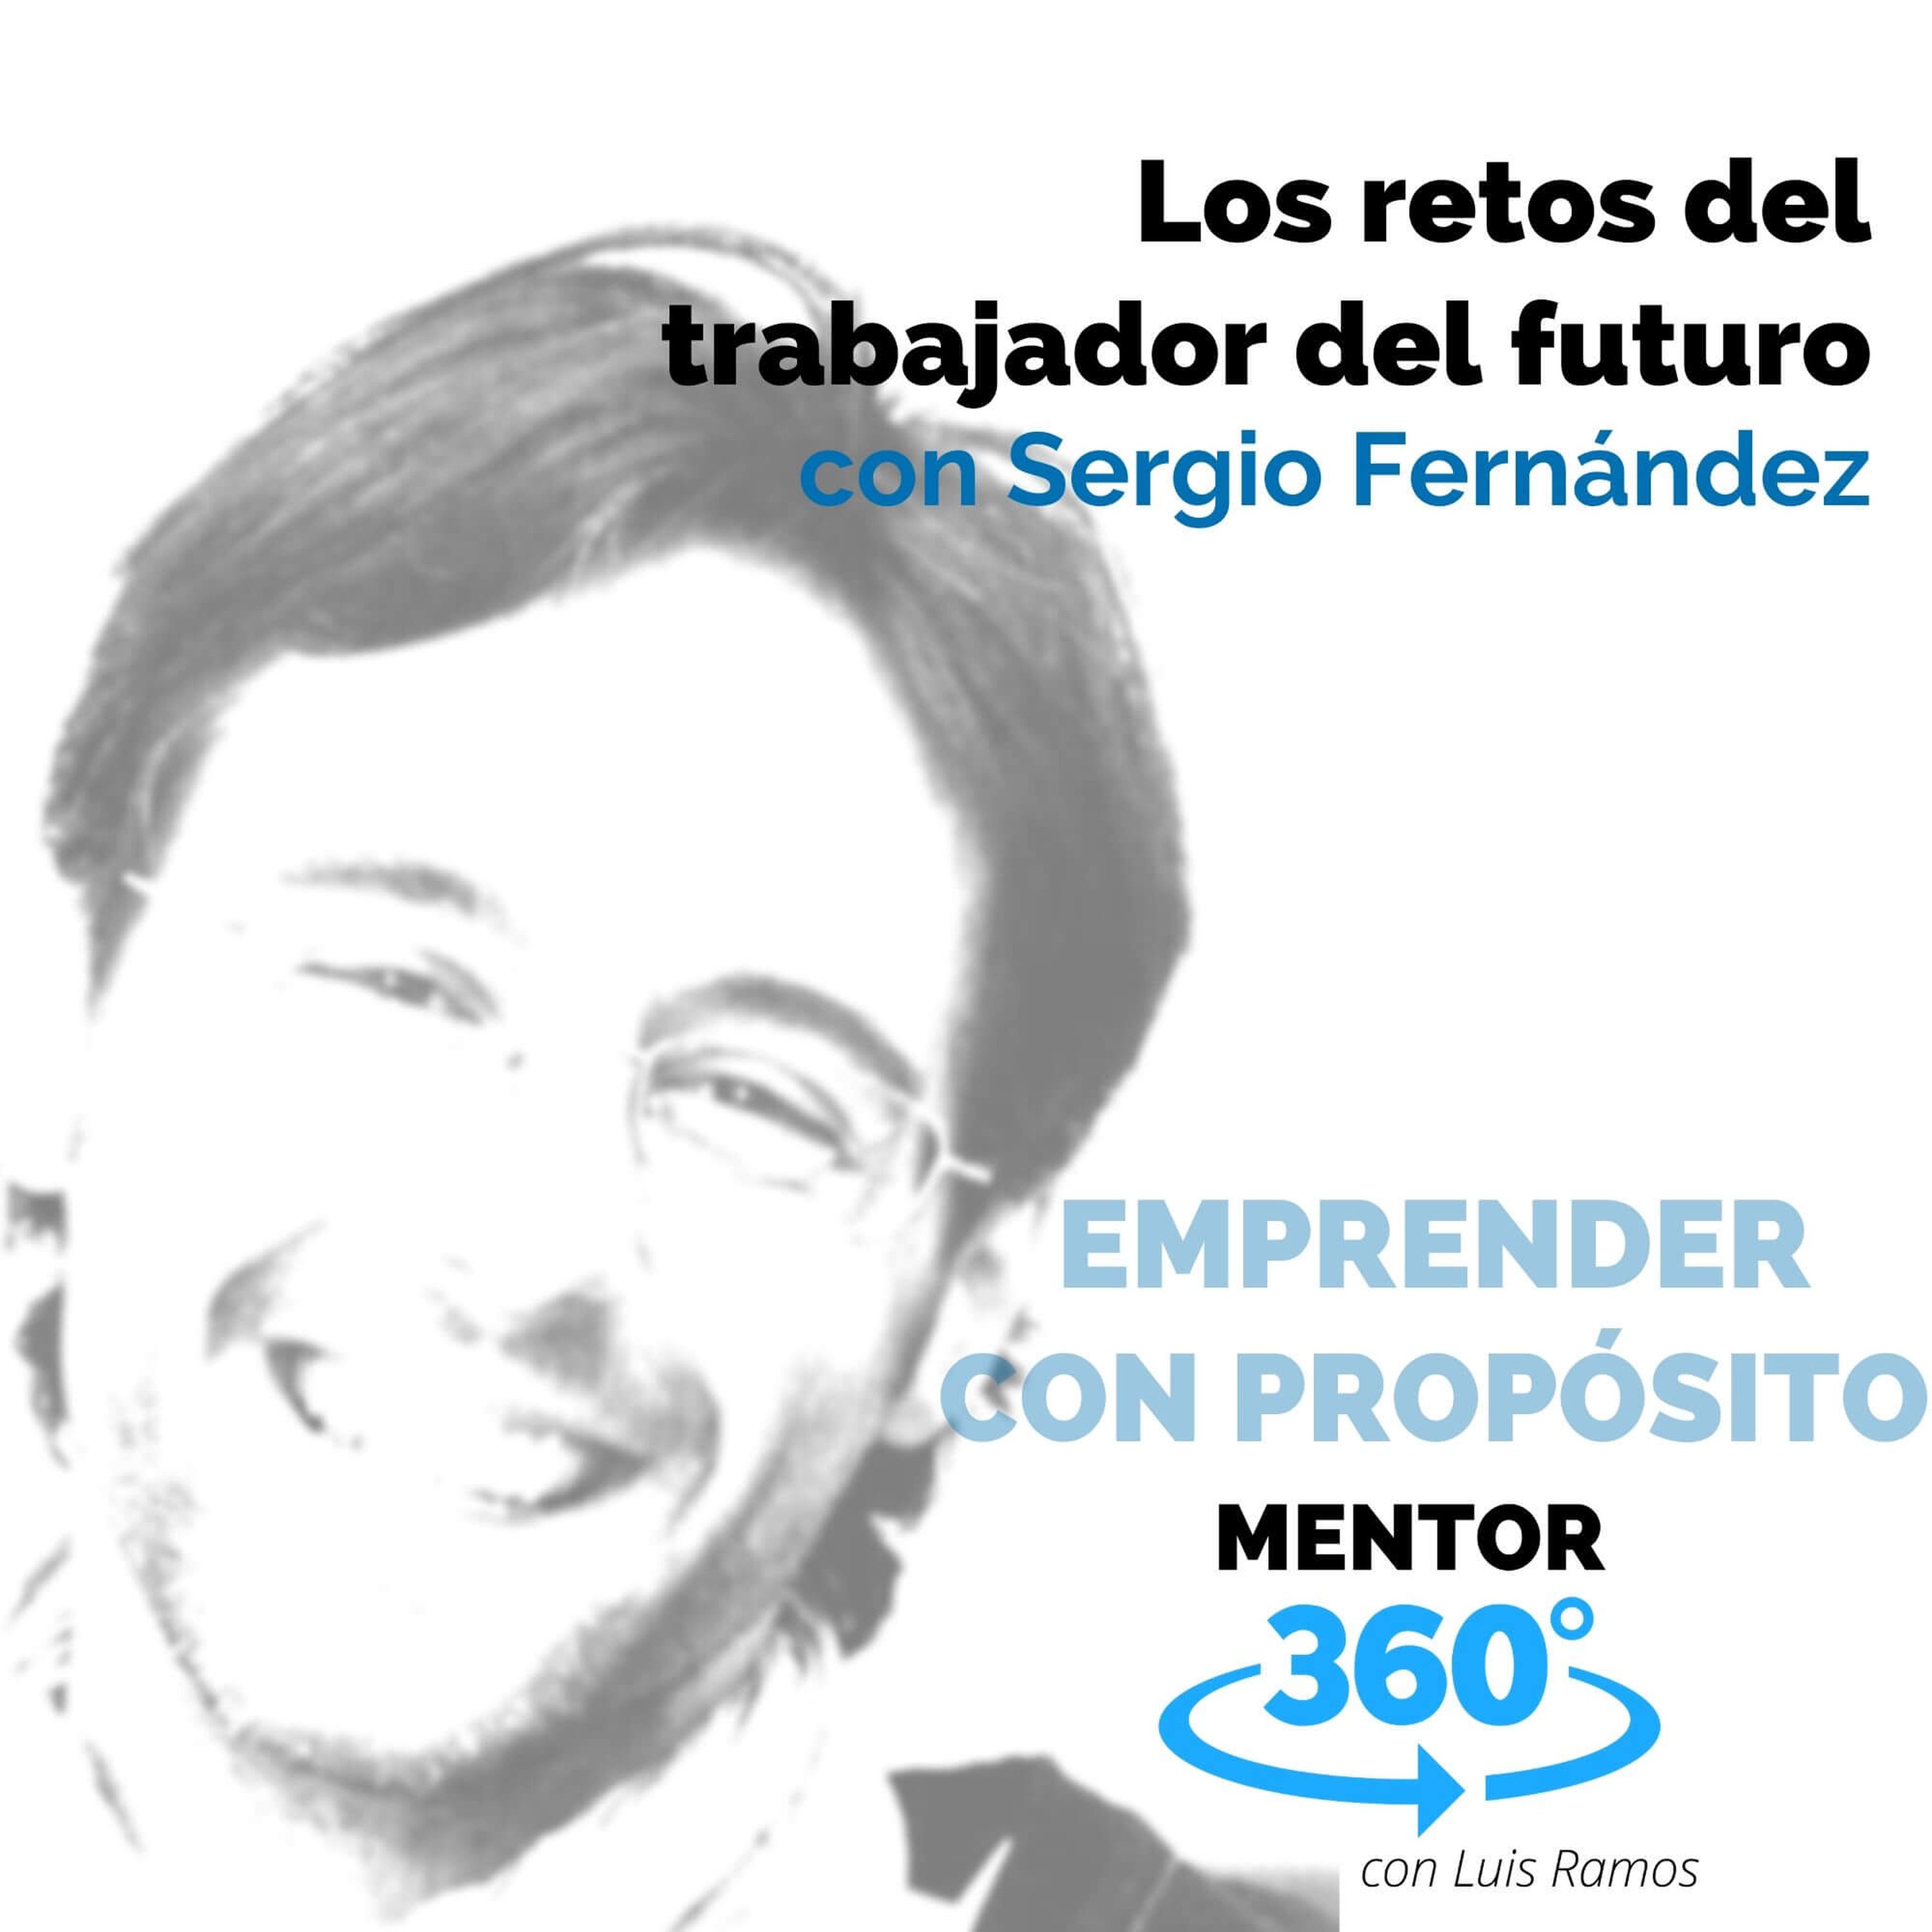 Los retos del trabajador del futuro, con Sergio Fernández - EMPRENDER CON PROPÓSITO - MENTOR360